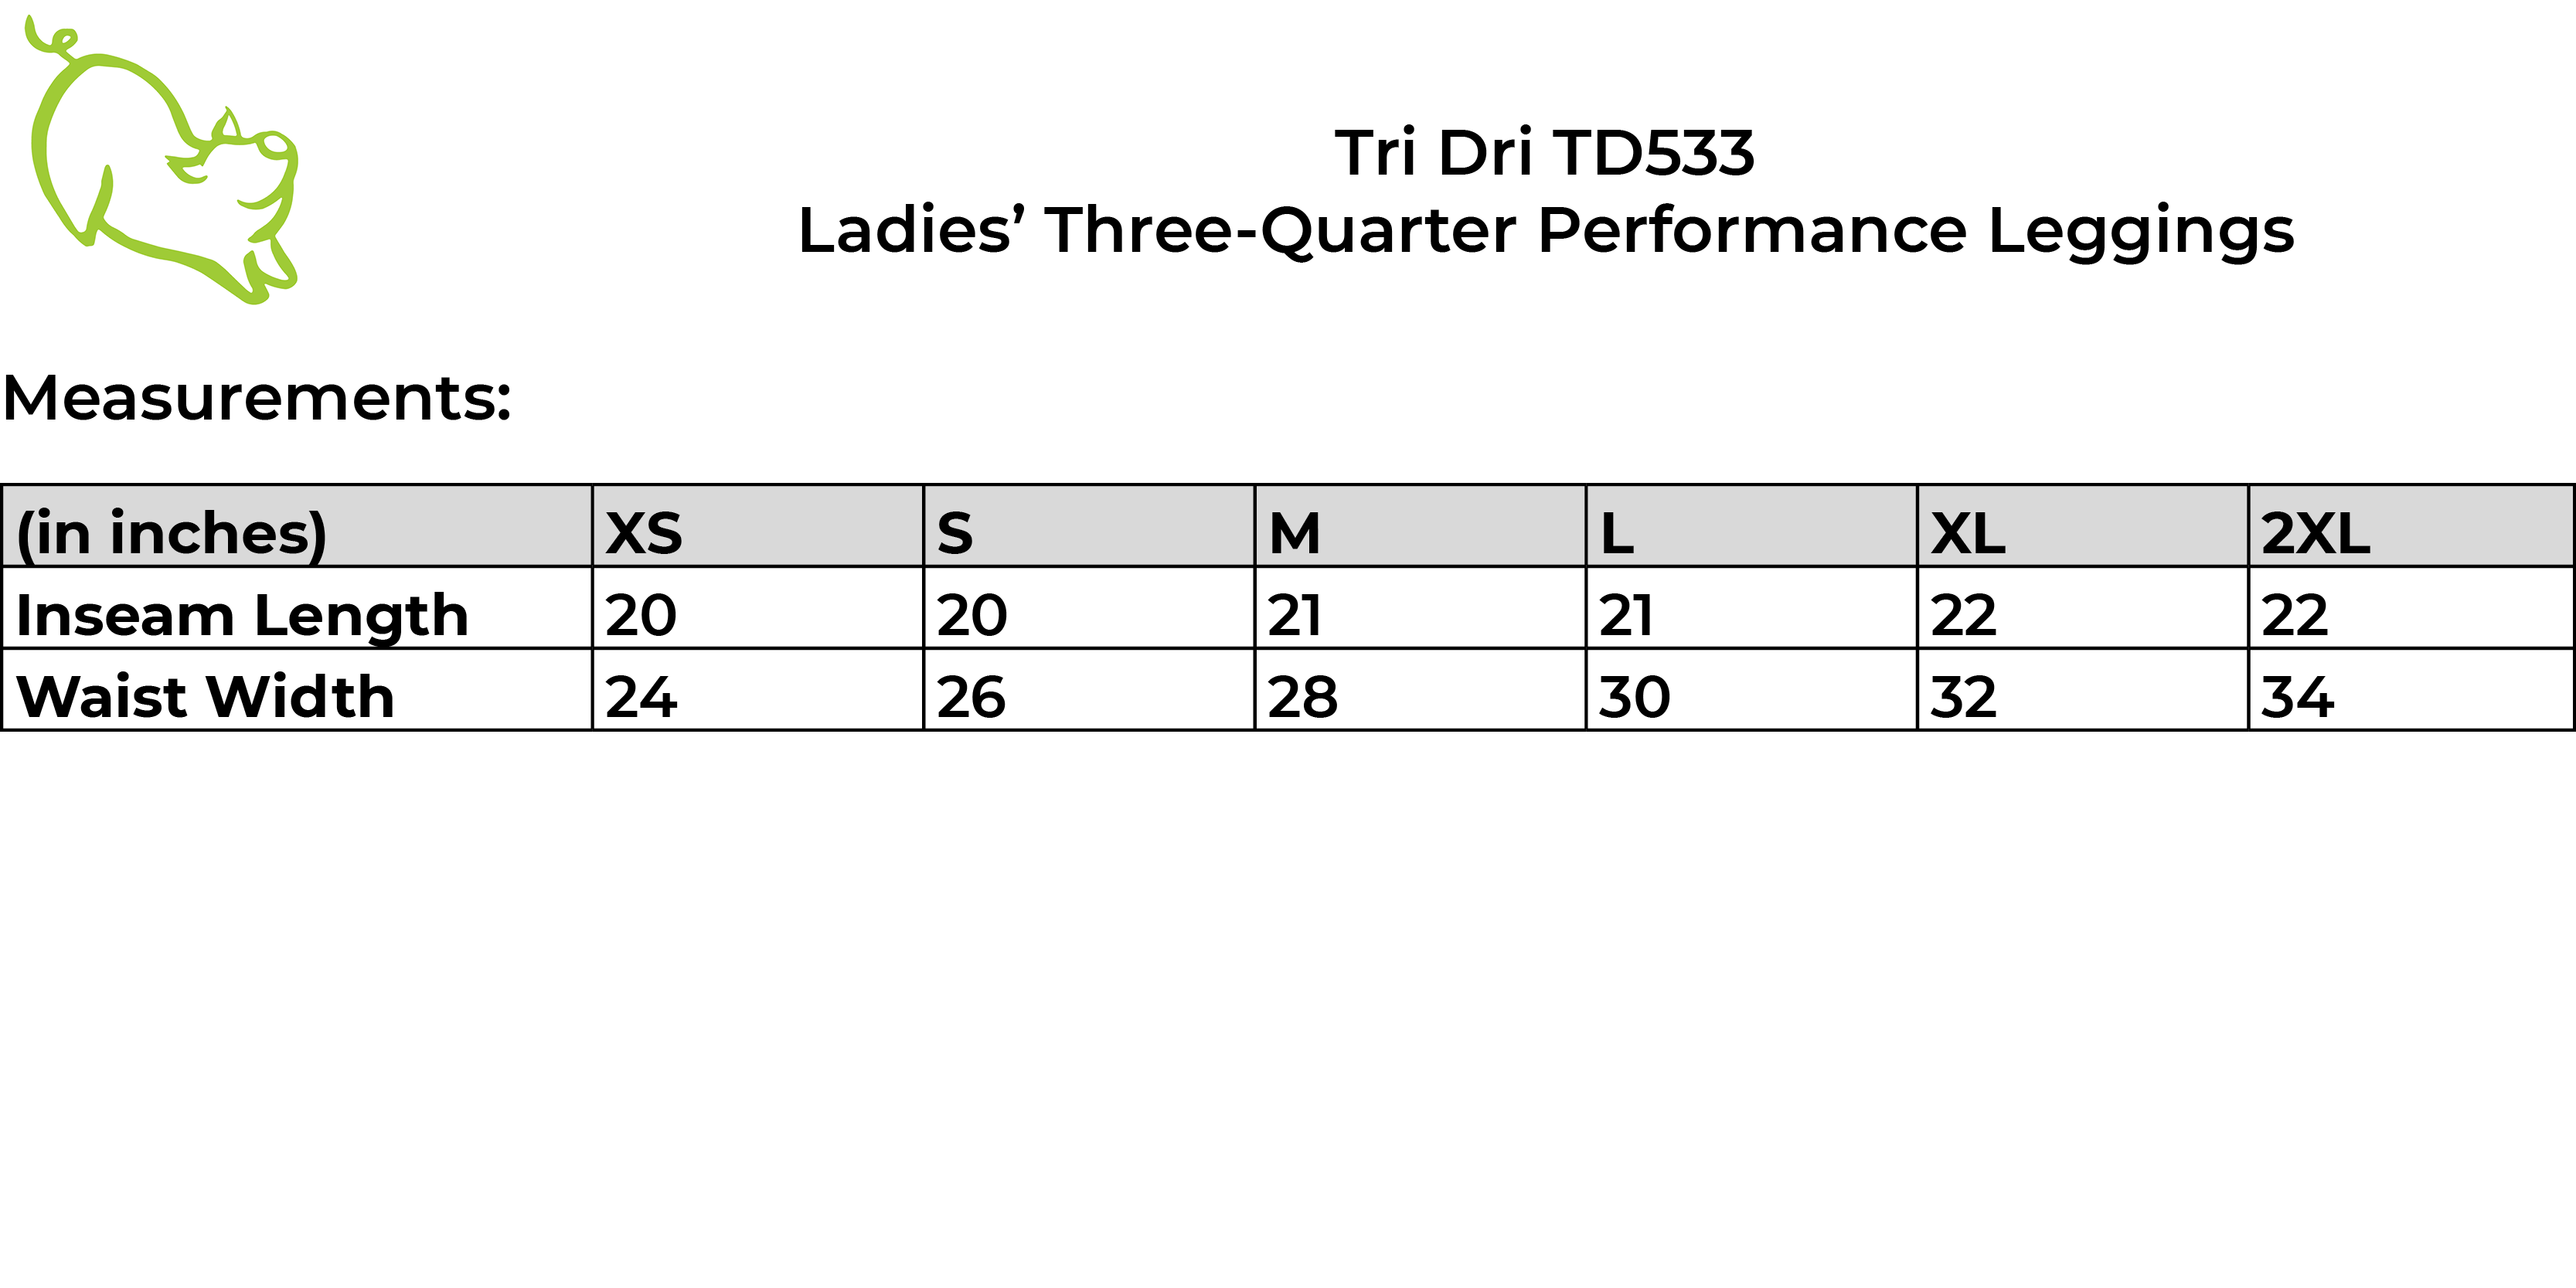 Tri Dri TD533 size guide